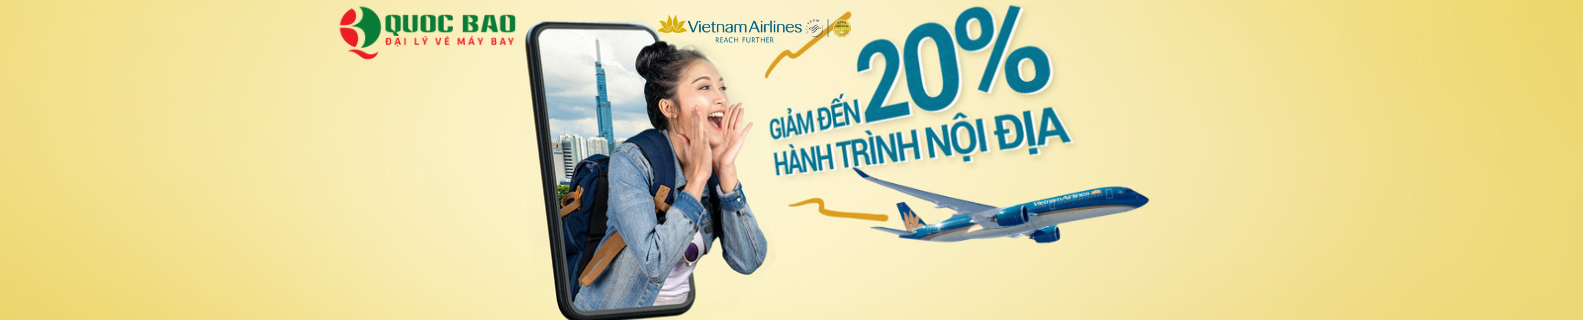 Vé máy bay Hà Nội đi Sài Gòn